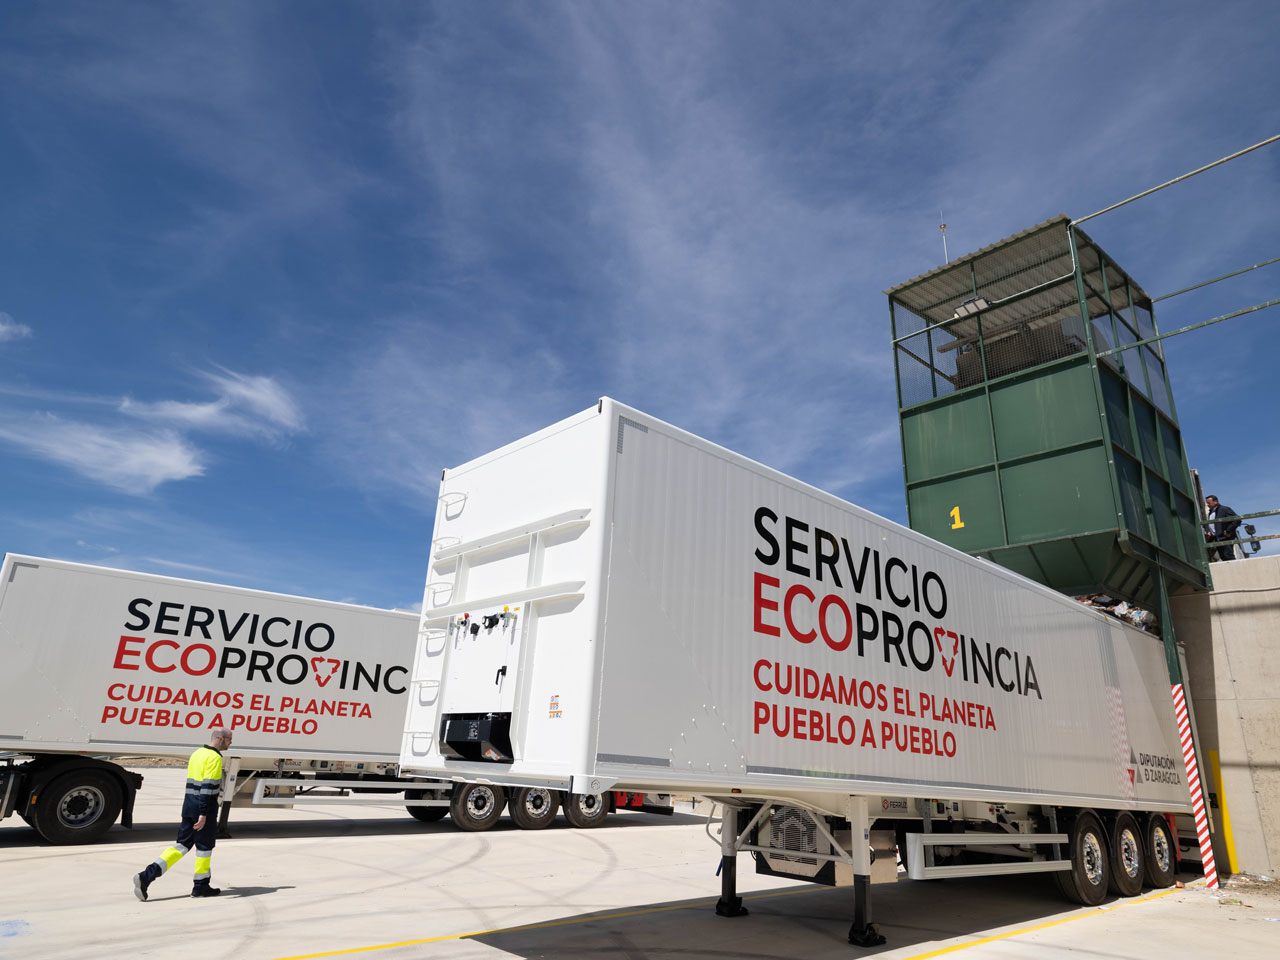 El servicio EcoProvincia dará servicio a cerca de 200.000 vecinos de la provincia de Zaragoza